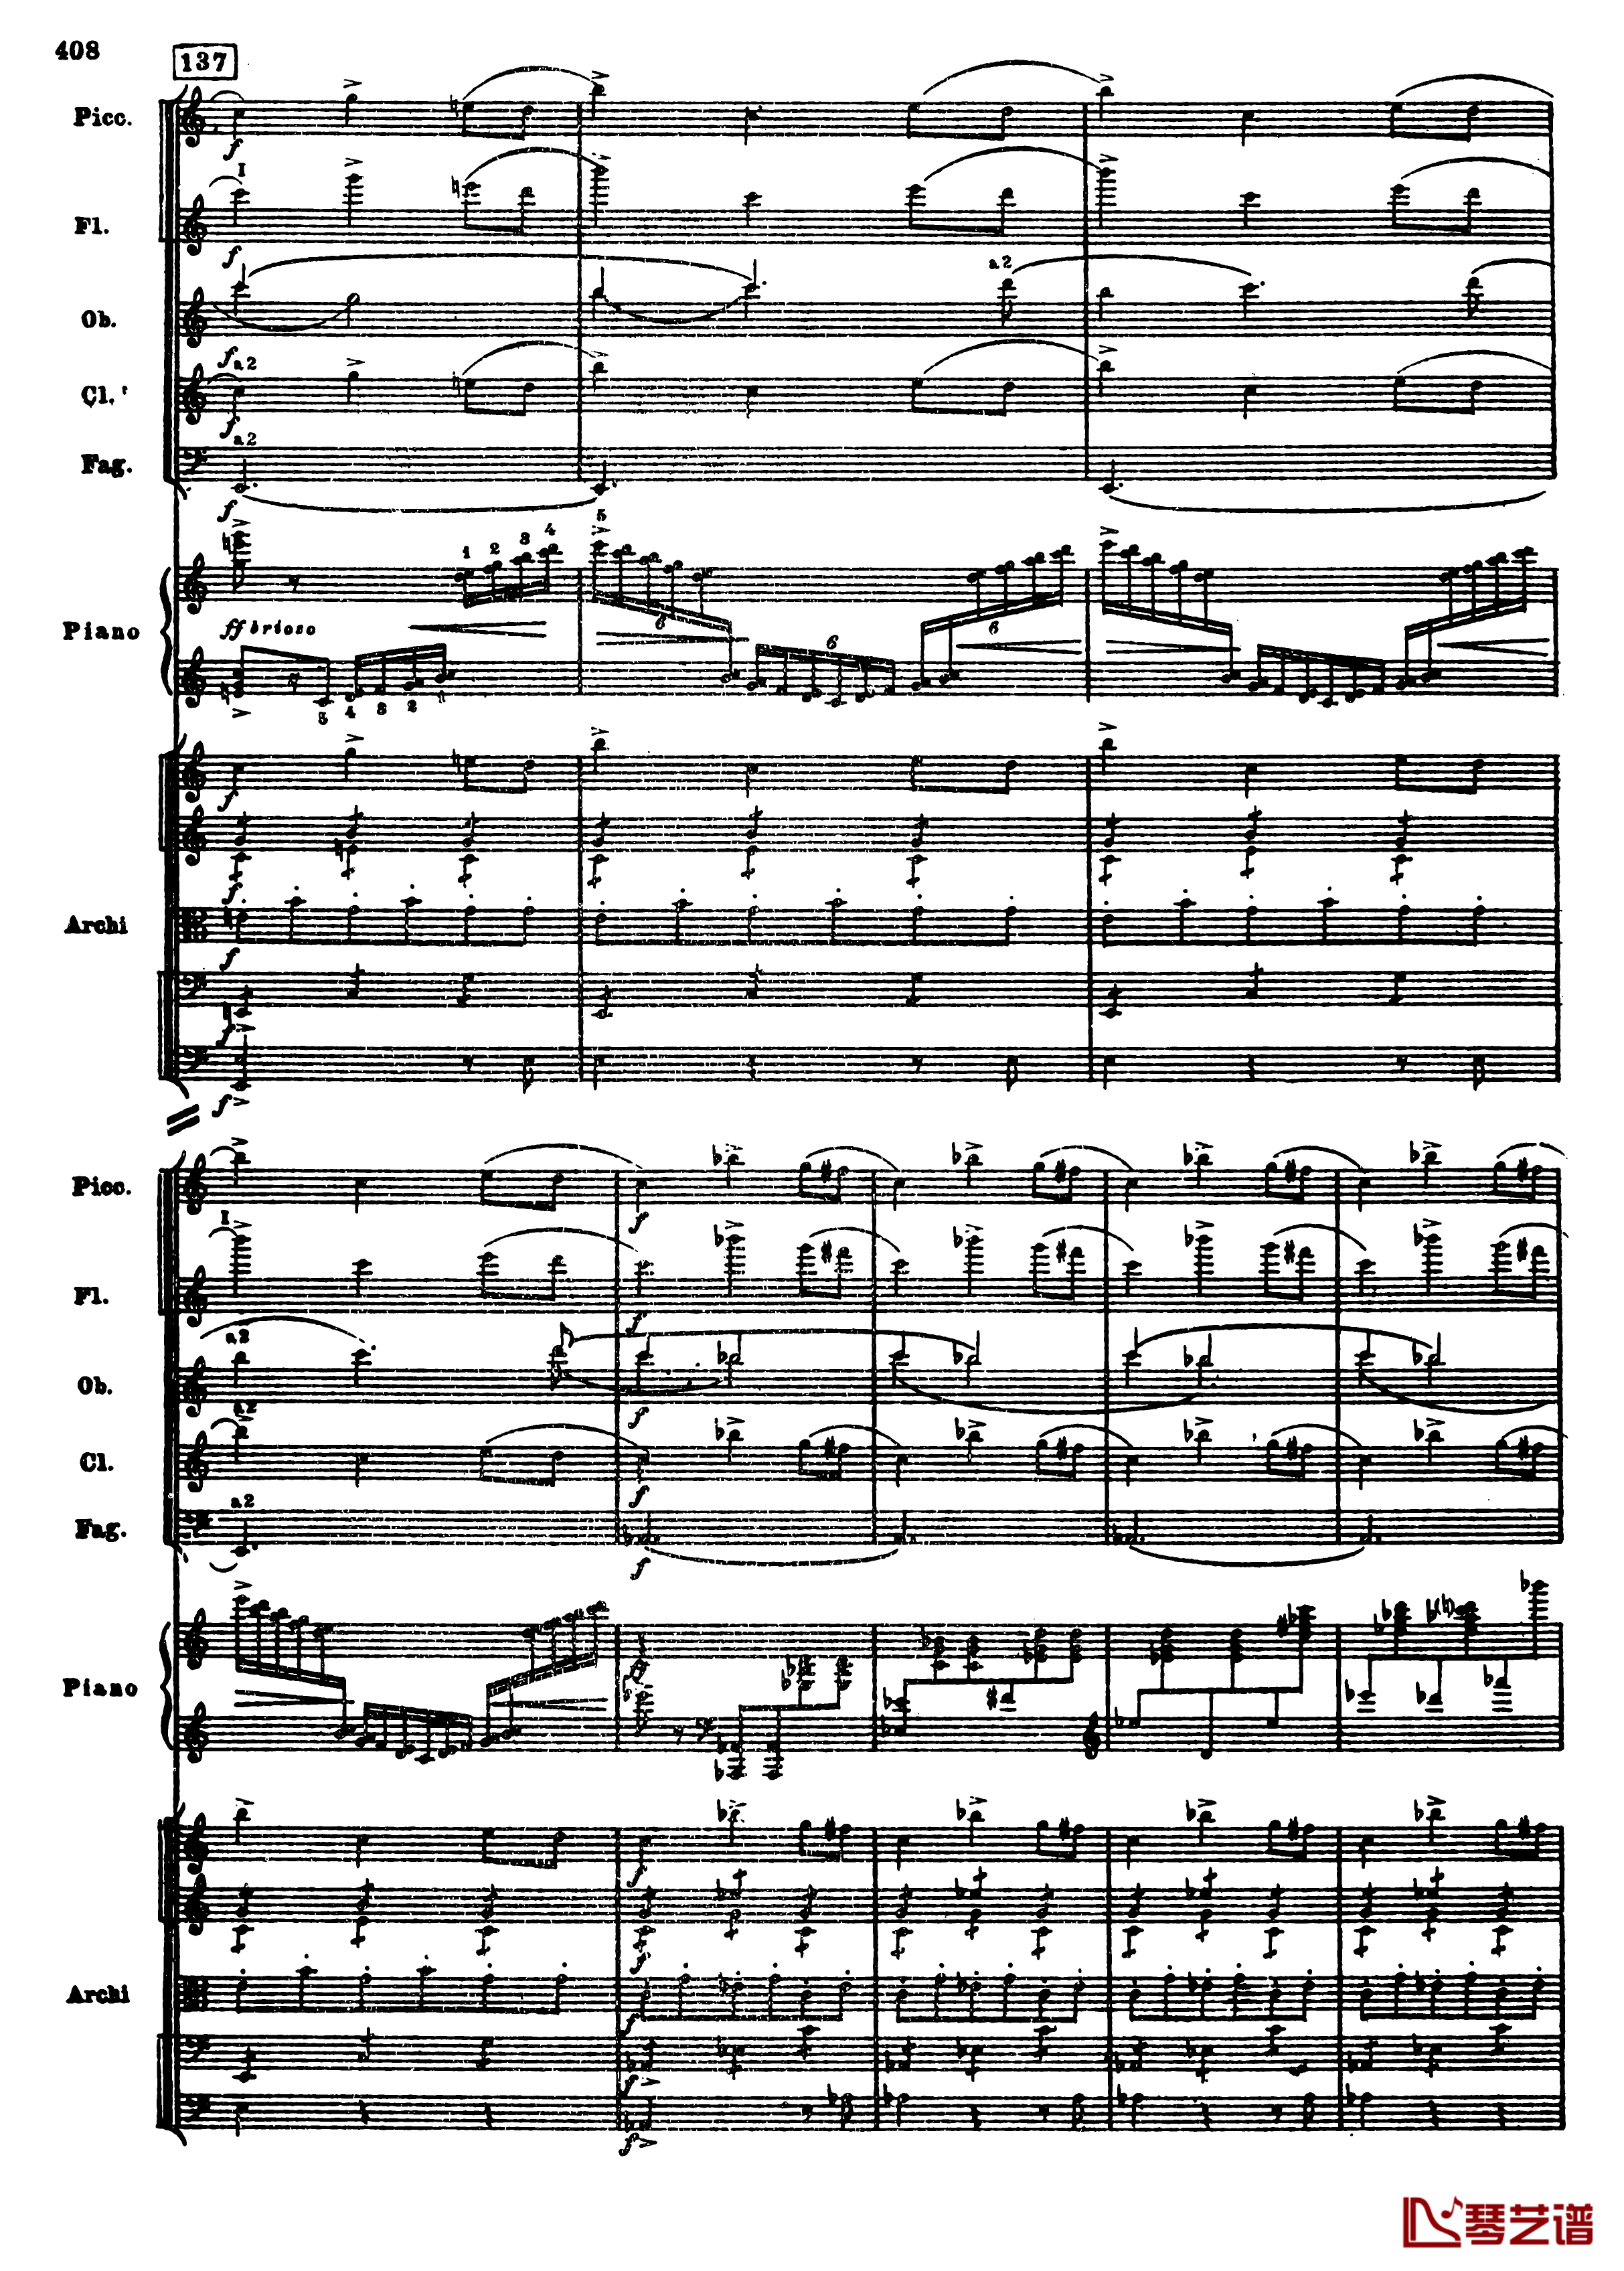 普罗科菲耶夫第三钢琴协奏曲钢琴谱-总谱-普罗科非耶夫140